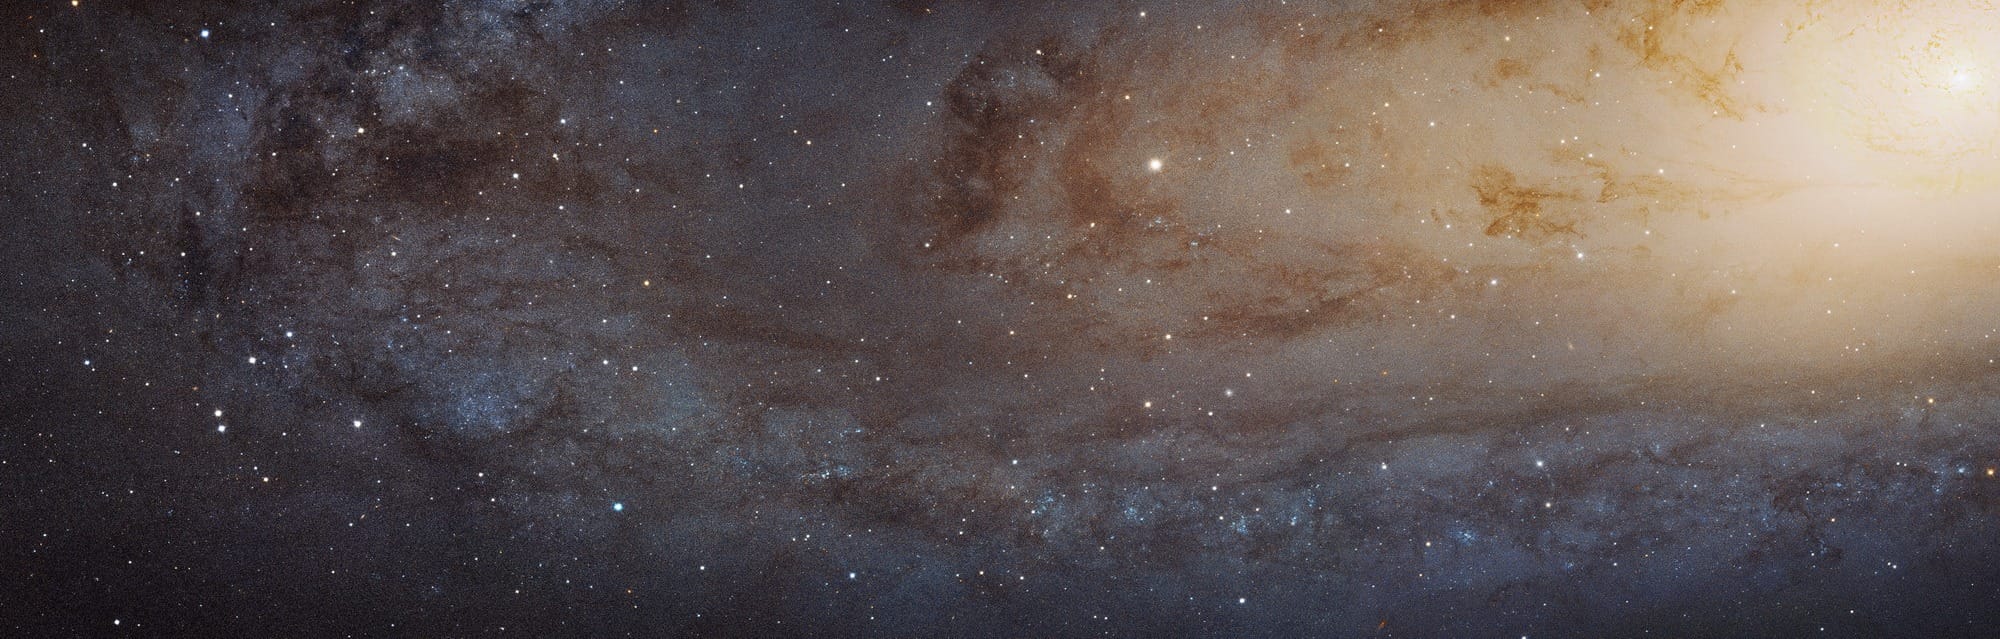 Dieser Ausschnitt der Andromedagalaxie reicht vom hellen Zentrum rechts oben bis in die nordöstlichen Außenbezirke, in denen bläulich leuchtende Sternentstehungsgebiete von dunklen Staubstreifen durchsetzt sind.